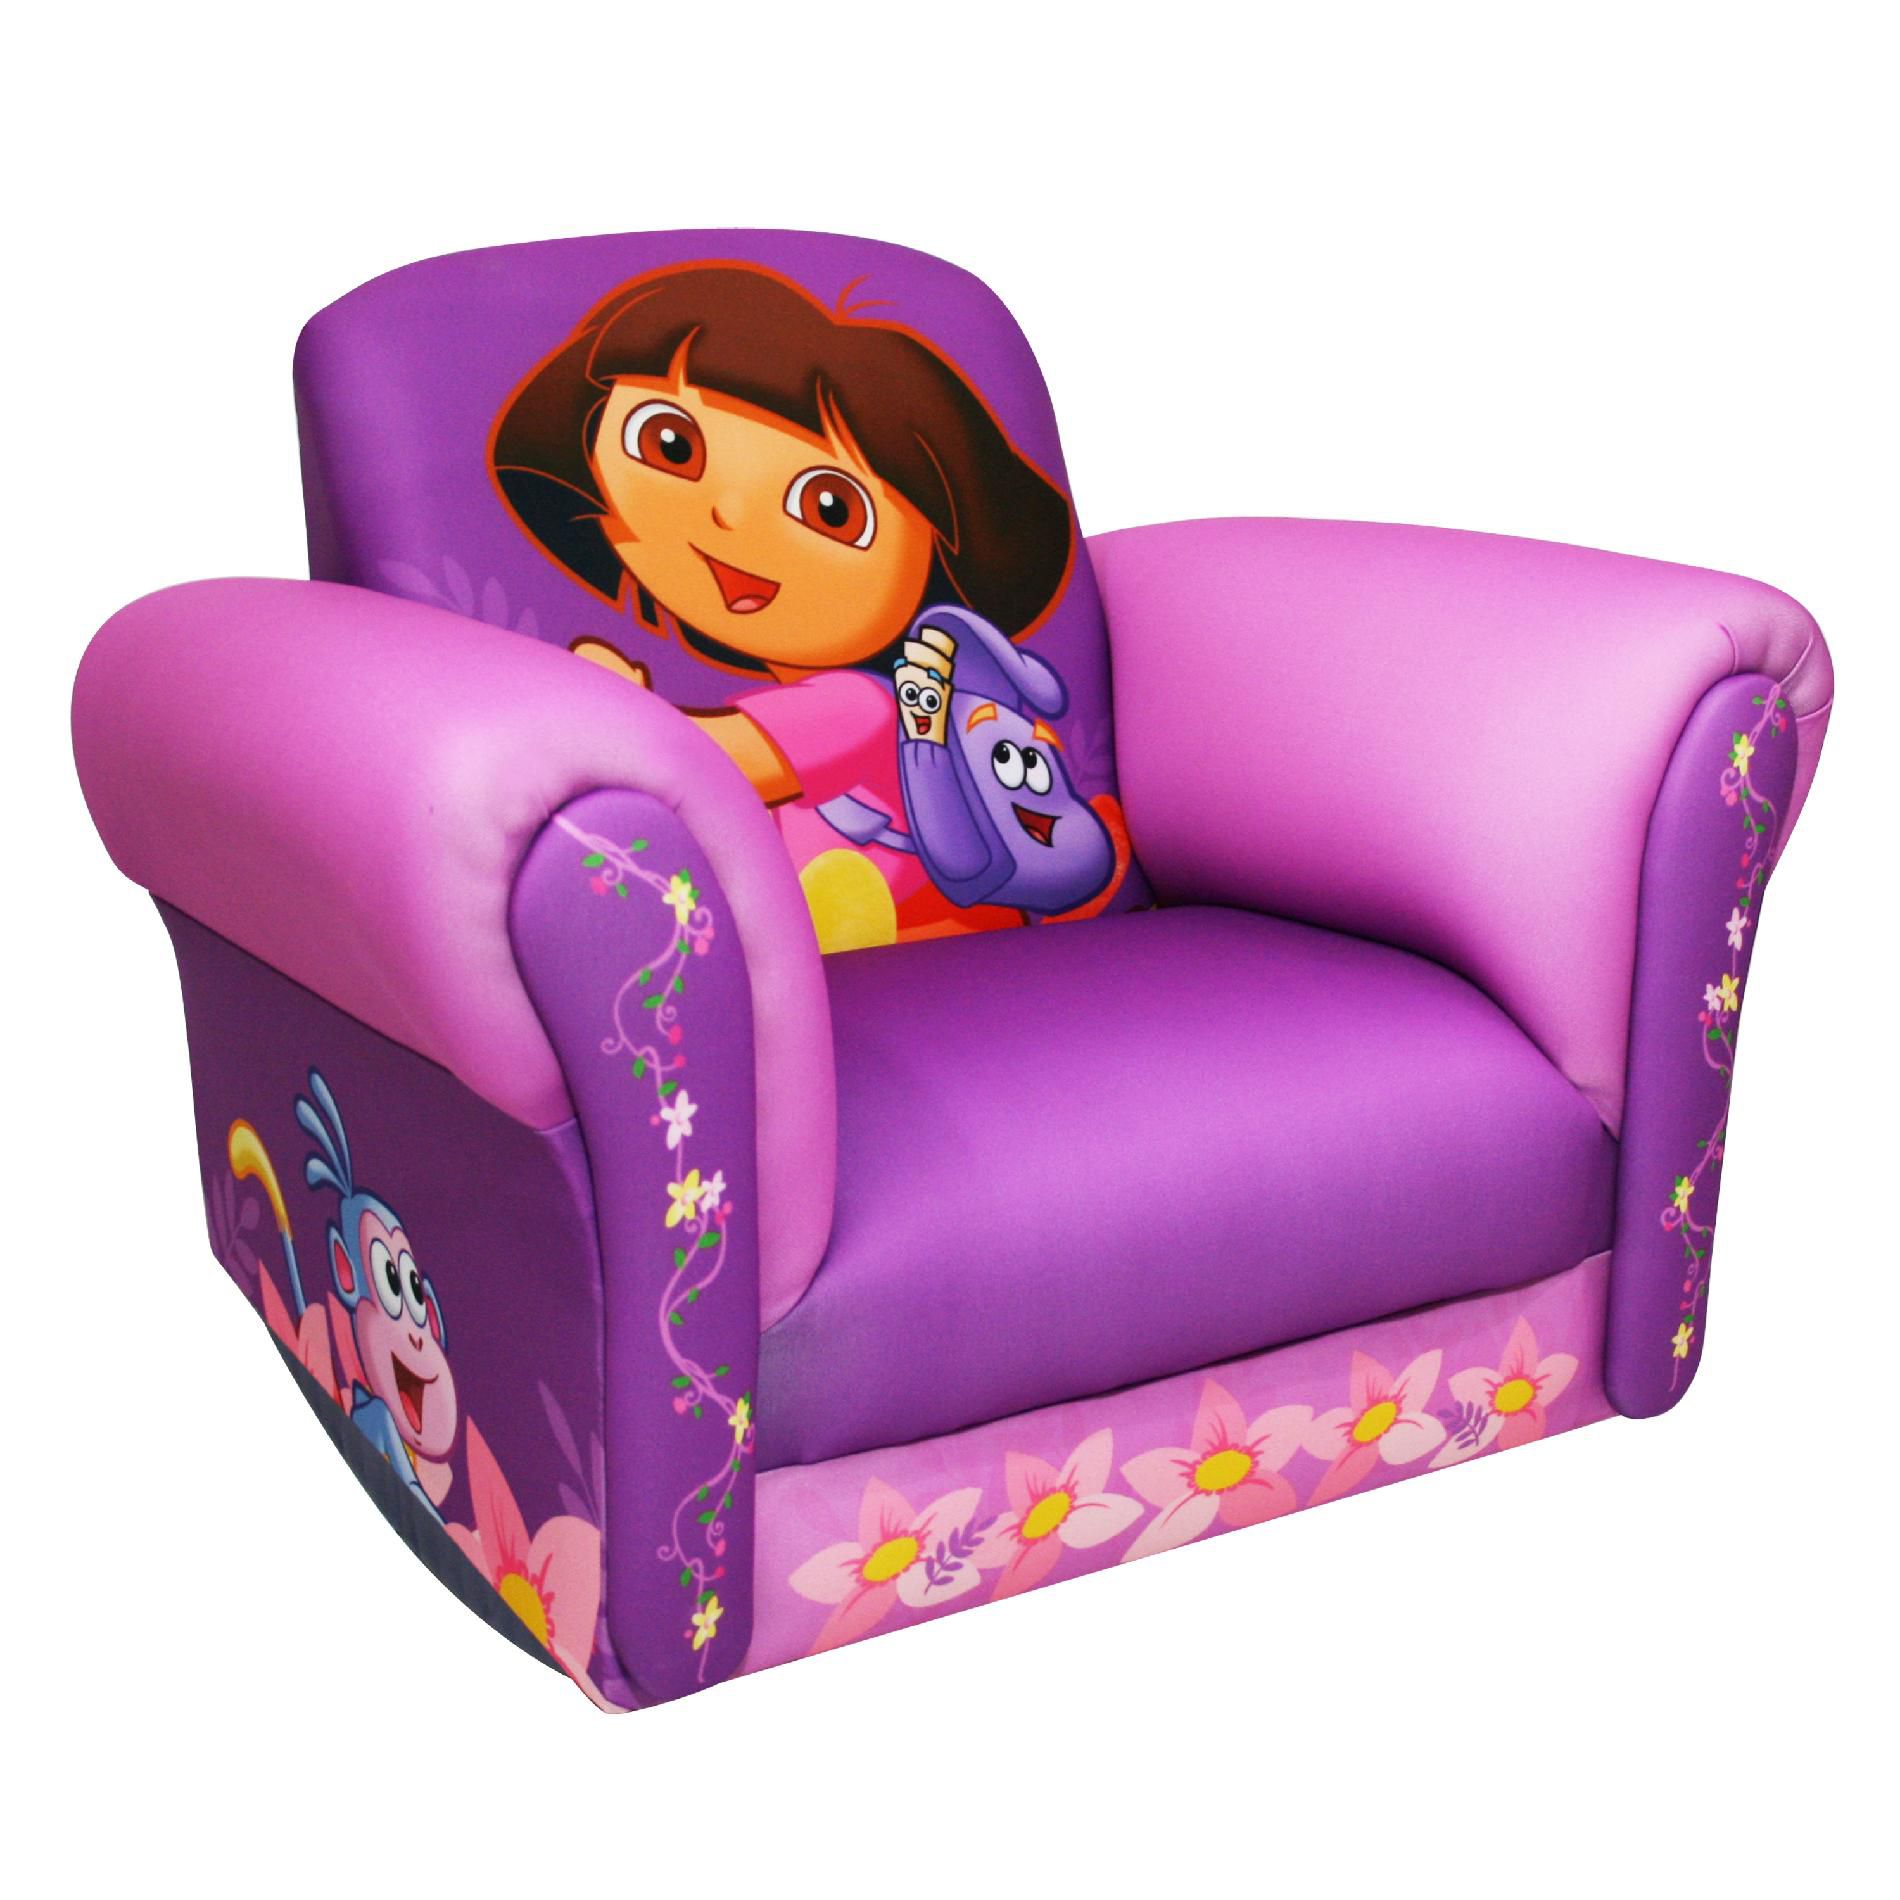 Nickelodeon 12709 Nickelodeon Dora Hiking Rocking Chair